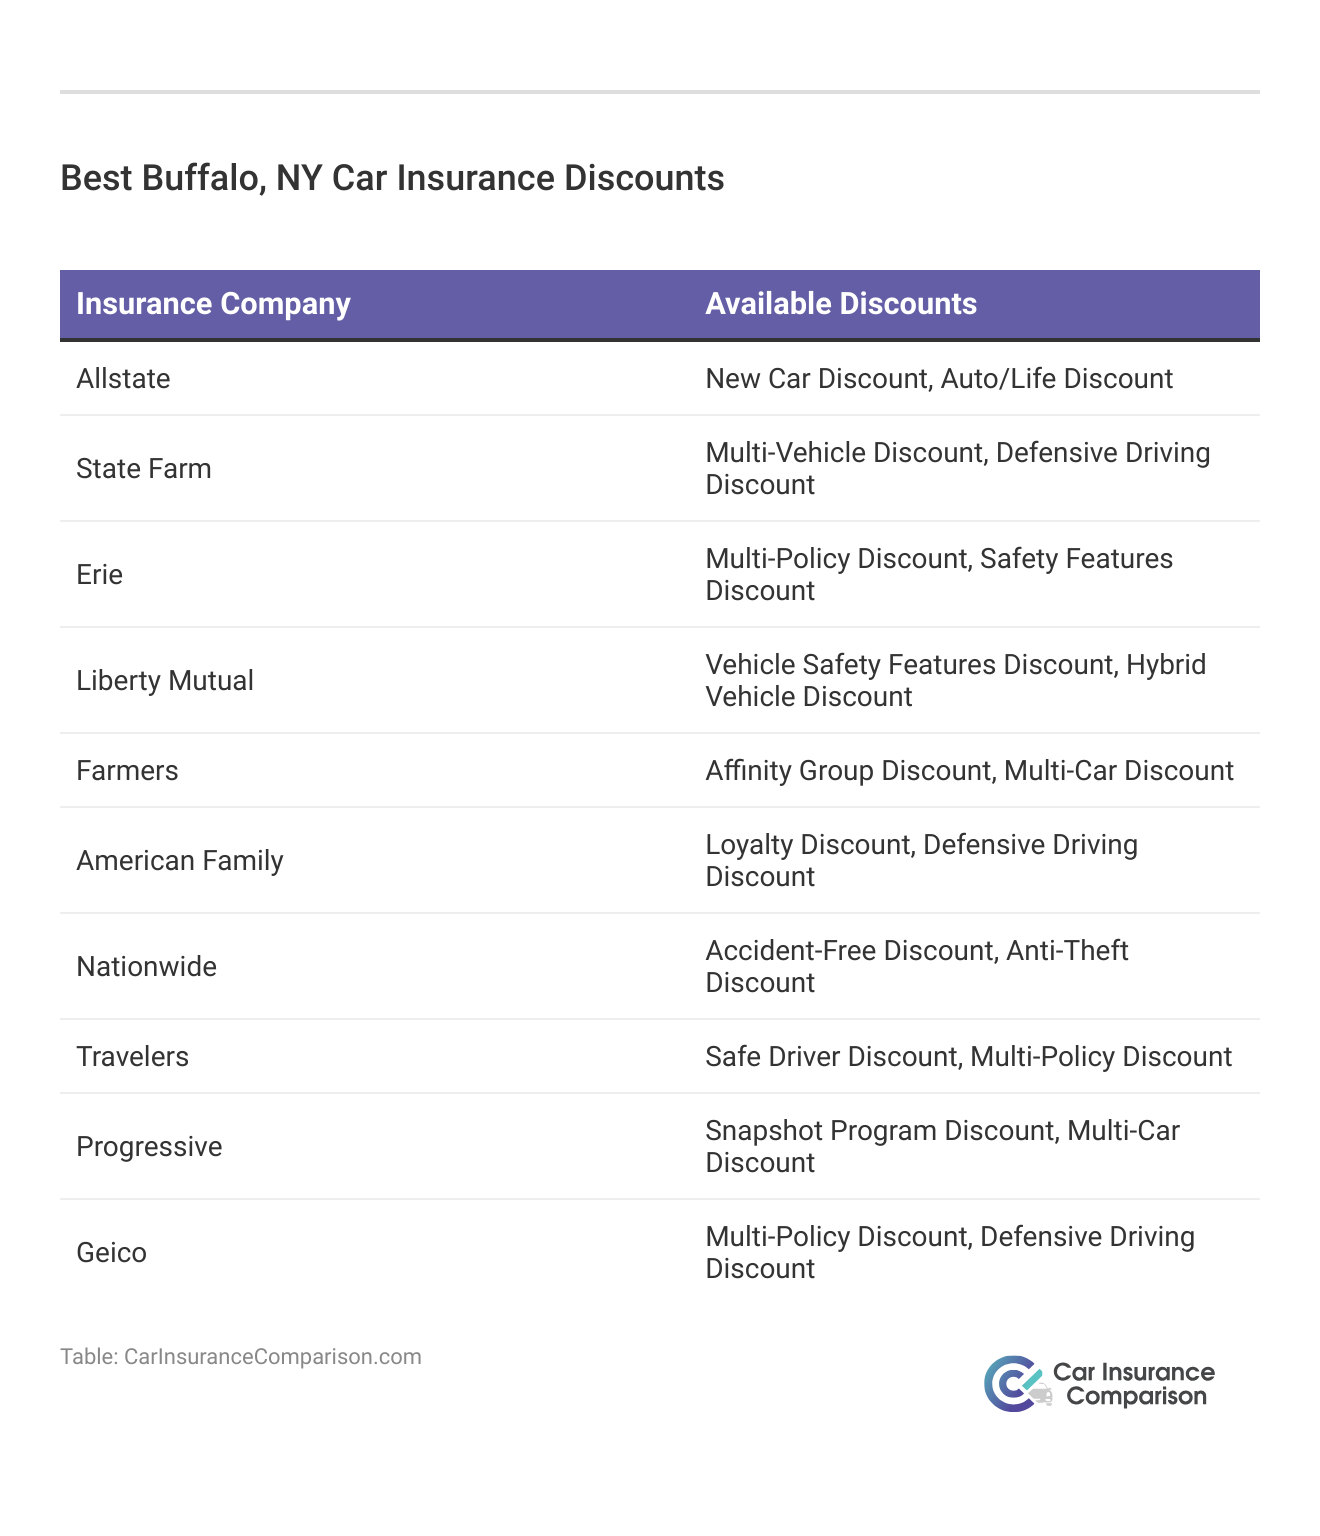 <h3>Best Buffalo, NY Car Insurance Discounts</h3>